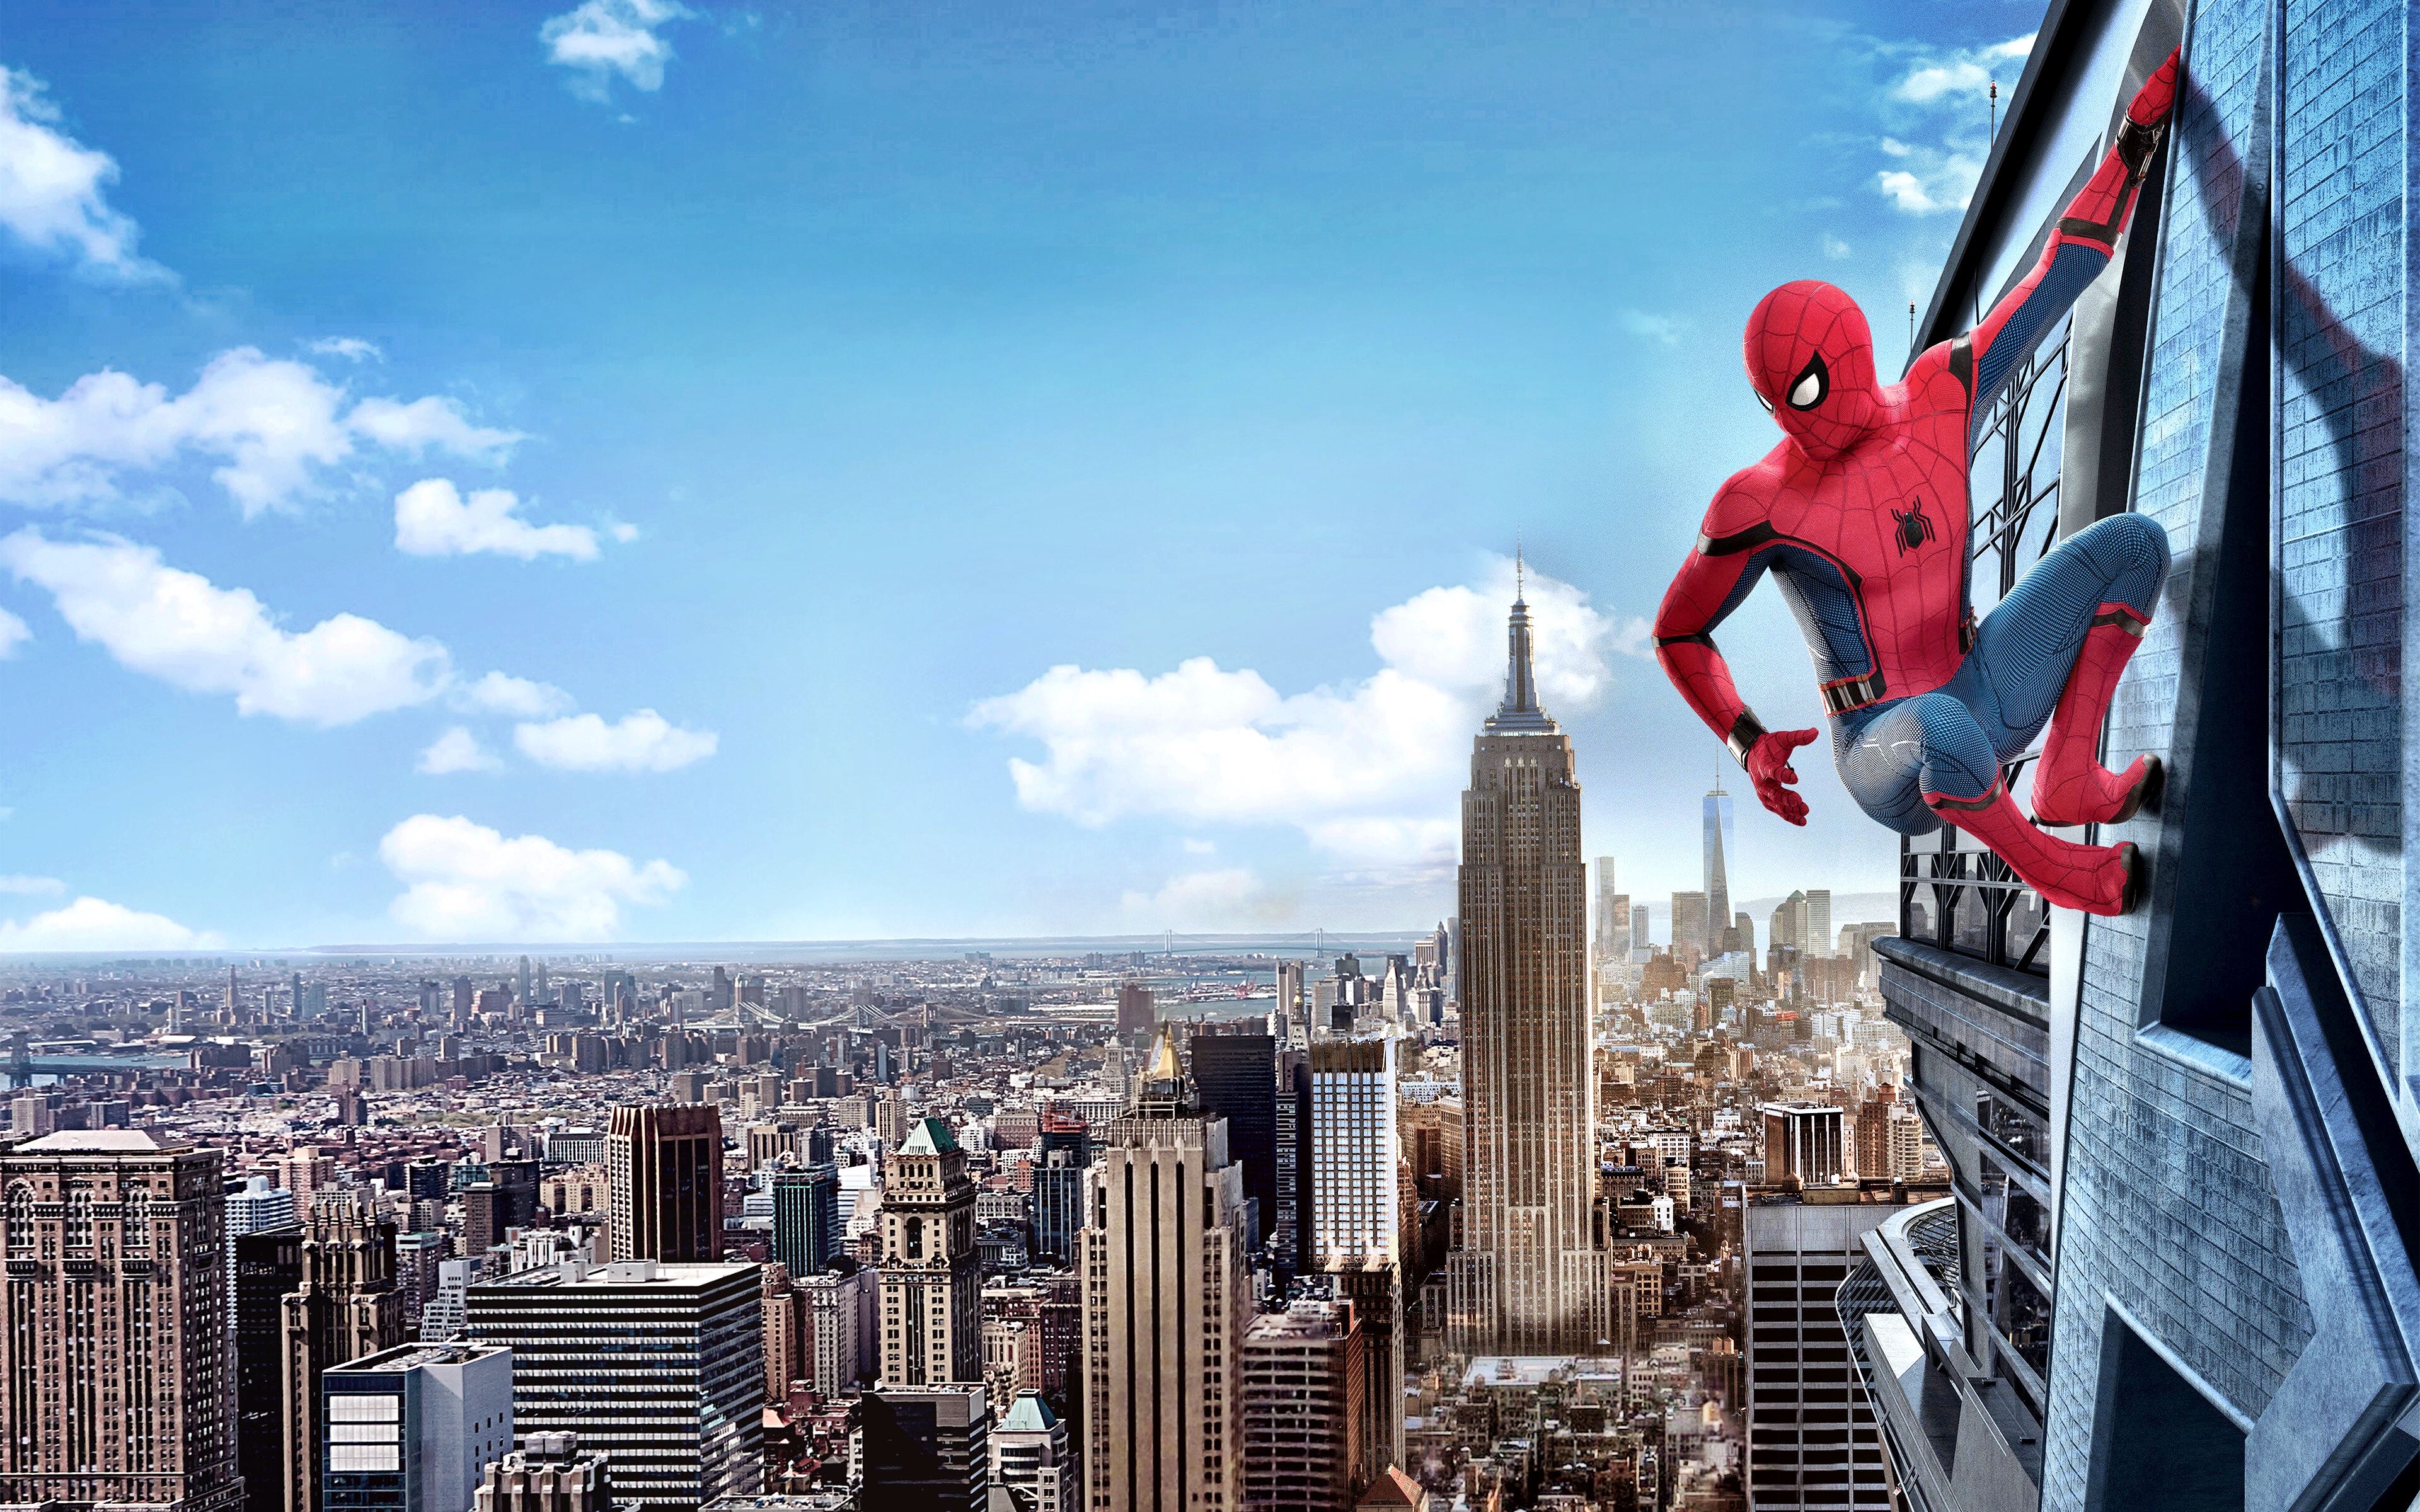 Man City Wallpaper 4k Pc Spider Man Ps4 Marvel 4k Hd Games 4k